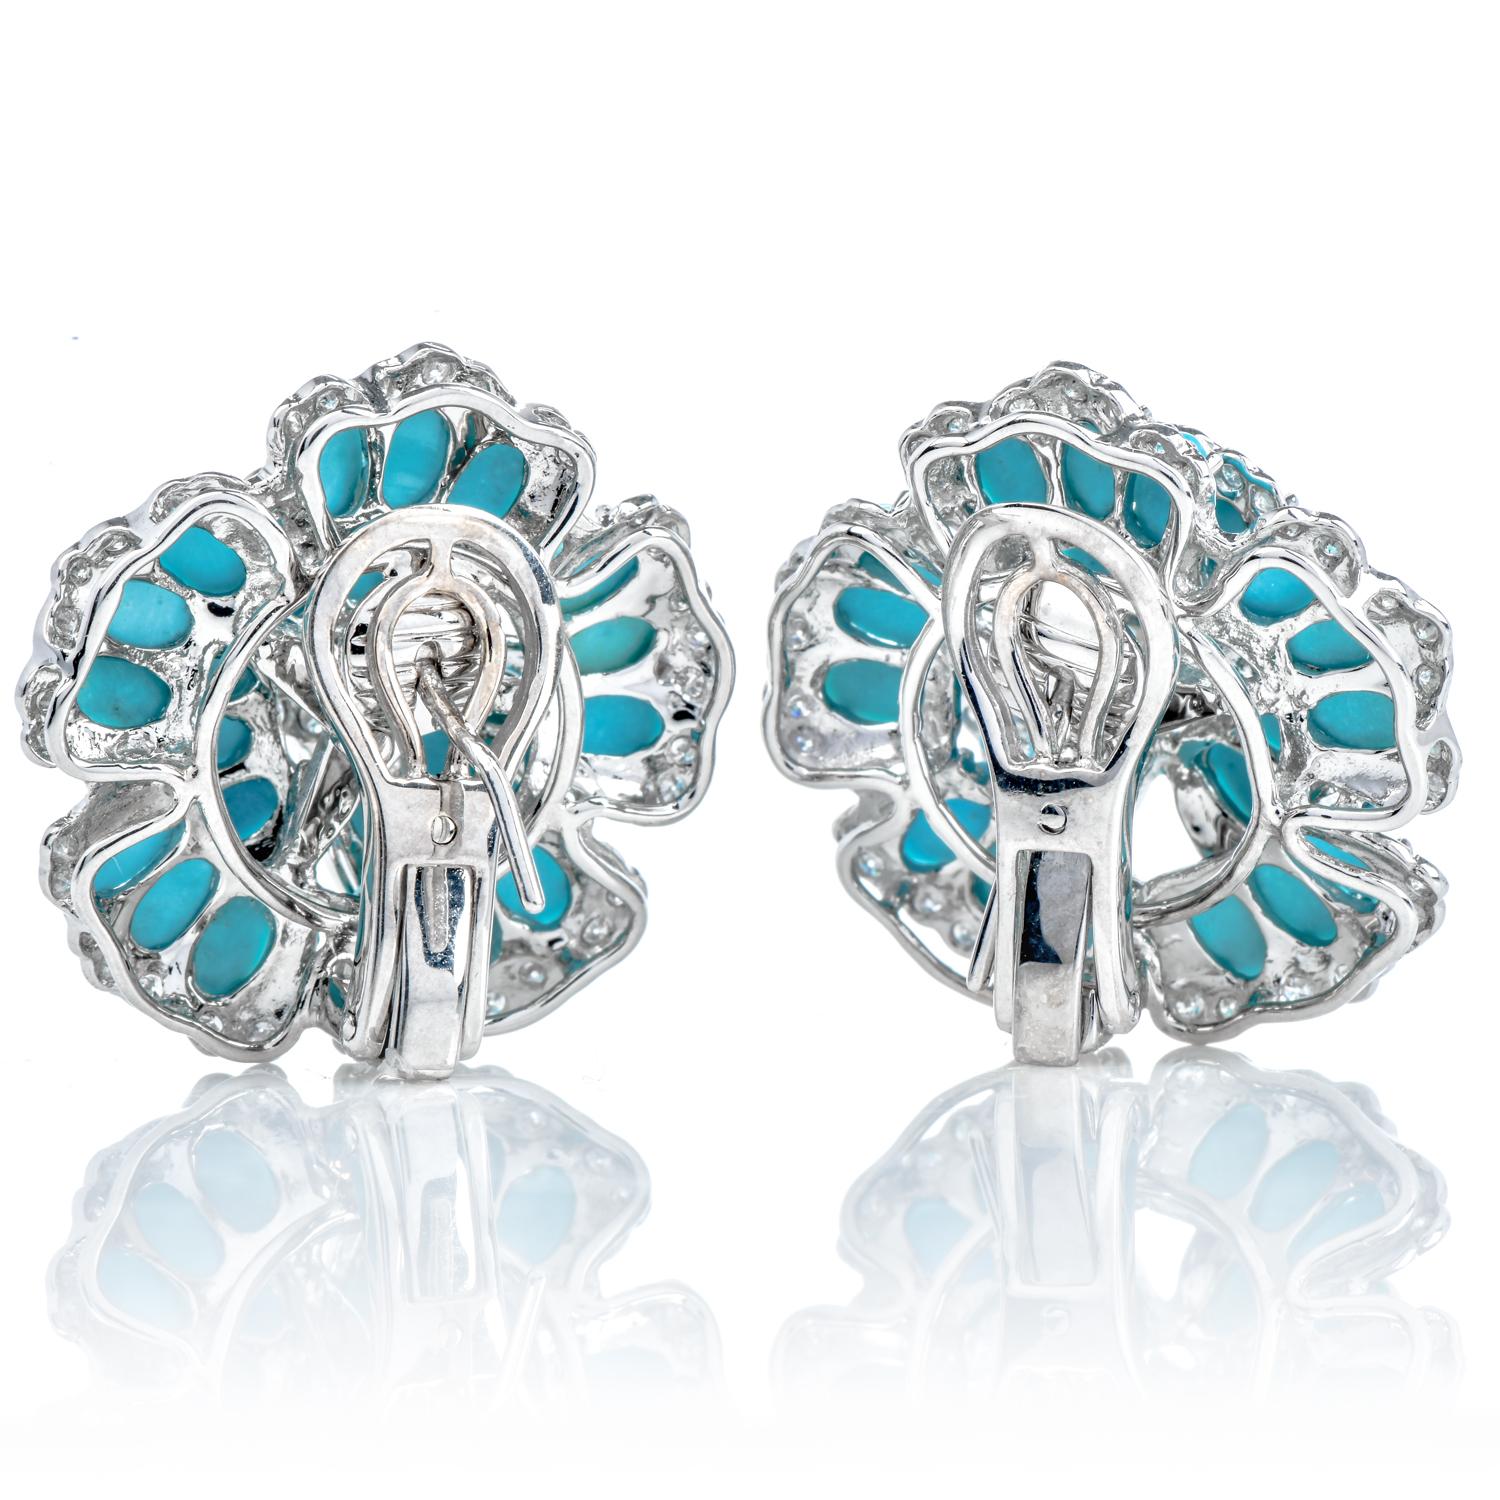 Inspiriert von der Schönheit der blauen Hortensienblüten, bieten diese romantischen Ohrringe eine subtile und elegante Kombination aus Farbe und Glanz.

Gefertigt aus massivem 18-karätigem Weißgold.

Jede Blume ist in der Mitte und in den